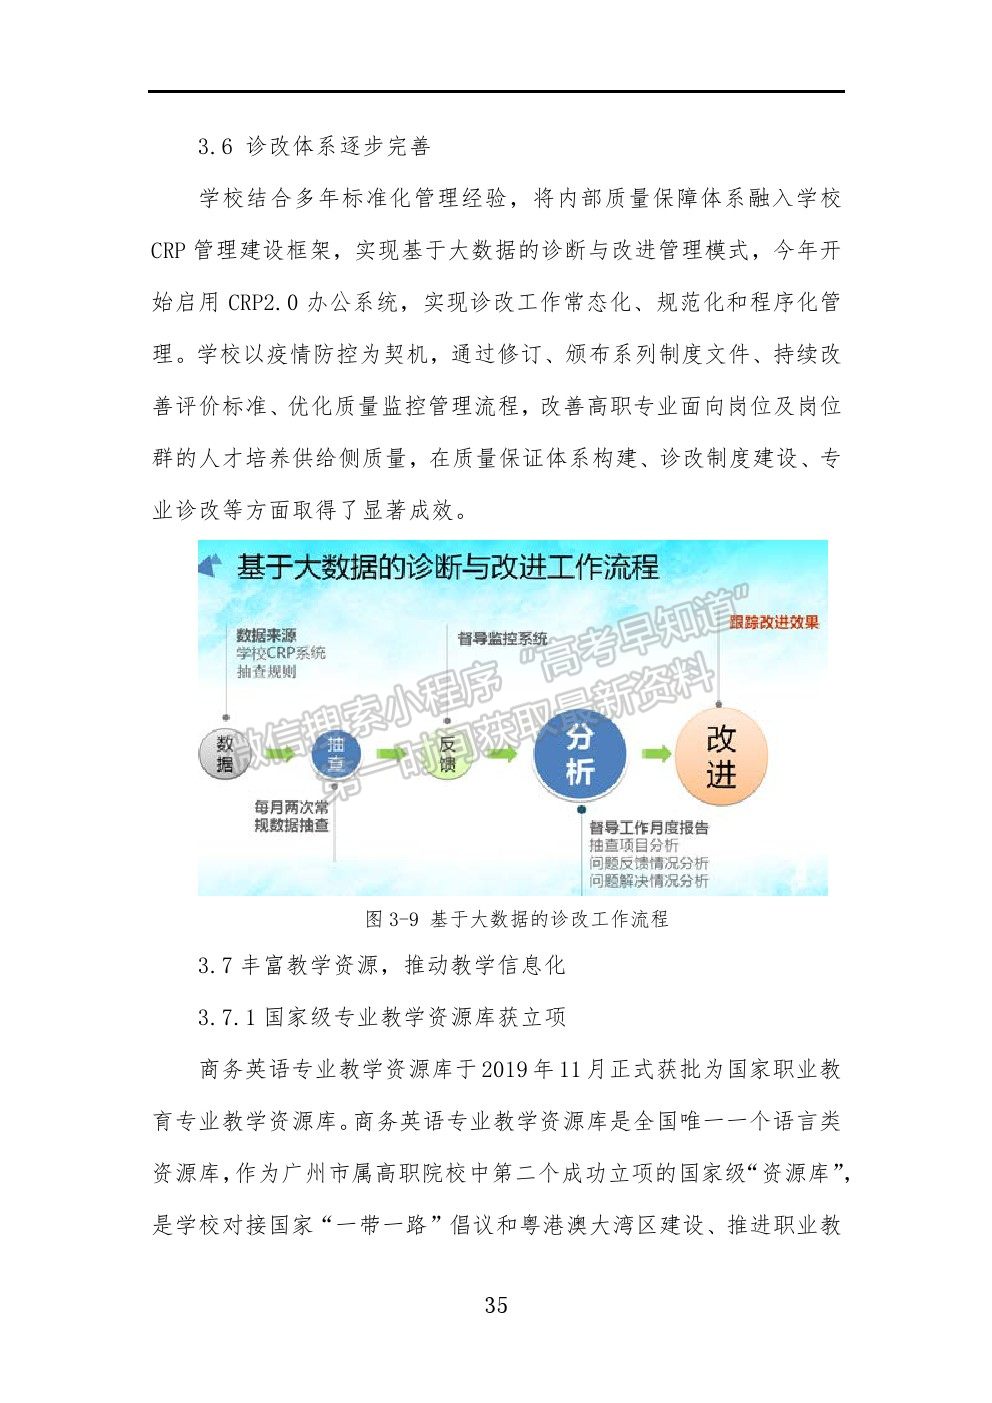 广州工程技术职业学院高等职业教育质量年度报告（2021）